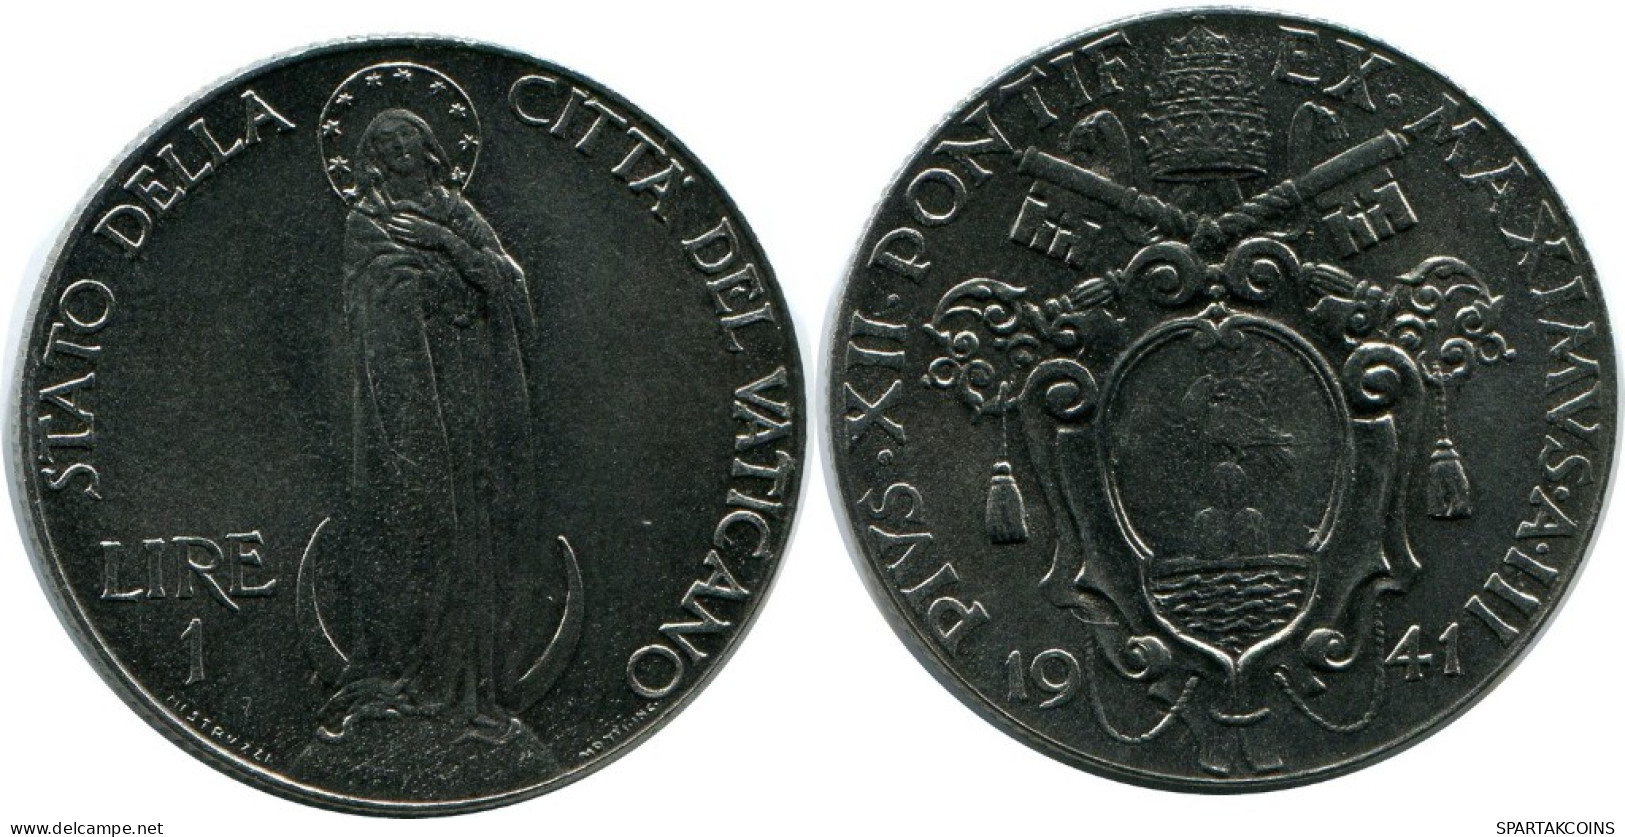 1 LIRE 1941 VATICAN Coin Pius XII (1939-1958) #AH314.16.U.A - Vatican